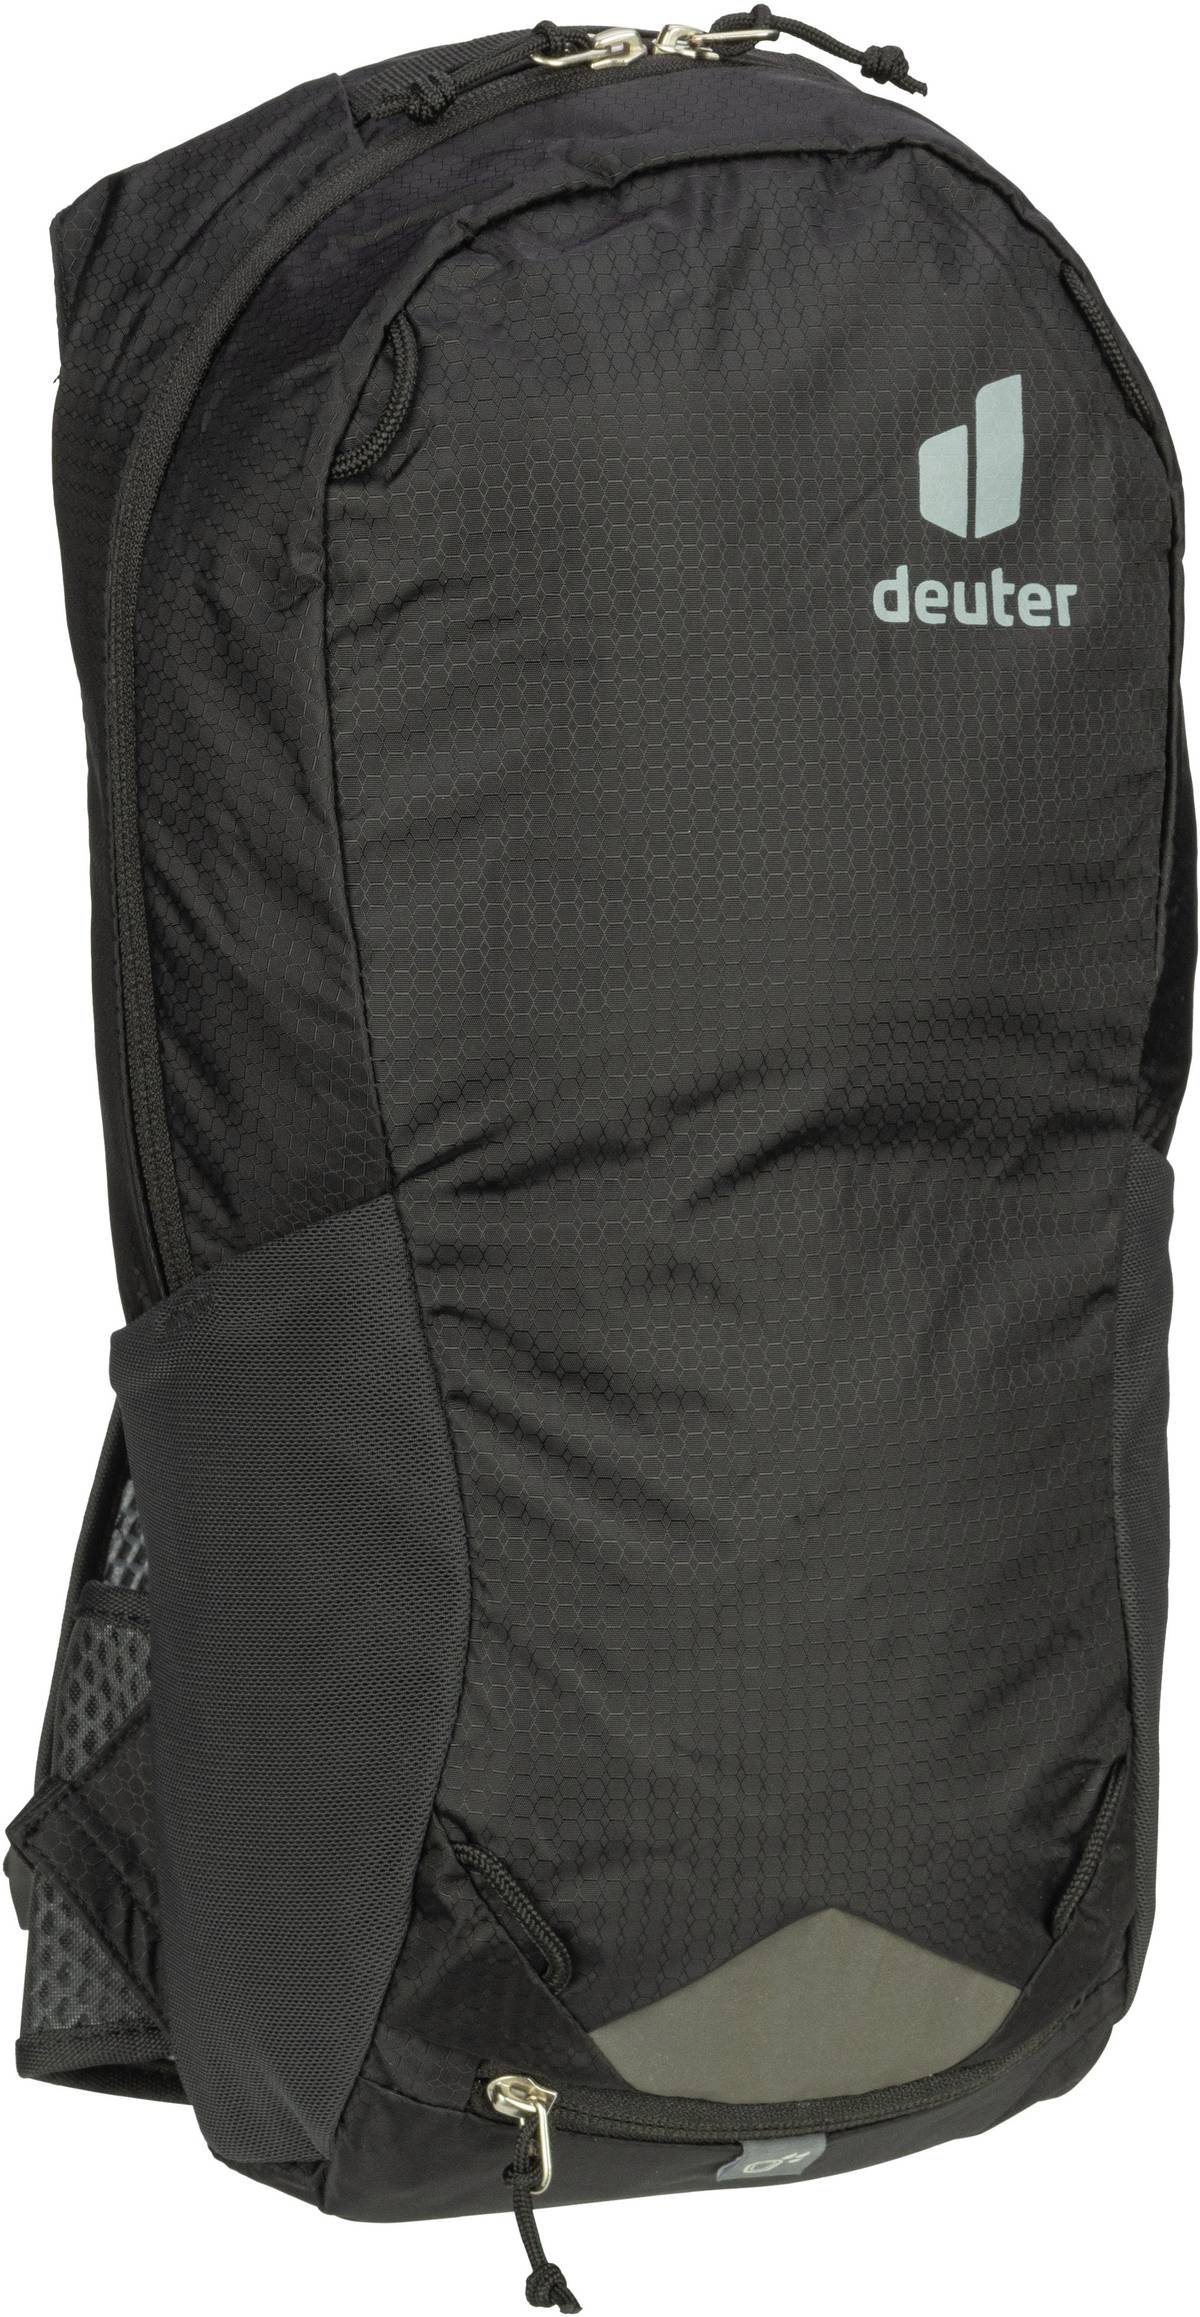 Deuter Race 8  in Schwarz (8 Liter), Rucksack / Backpack